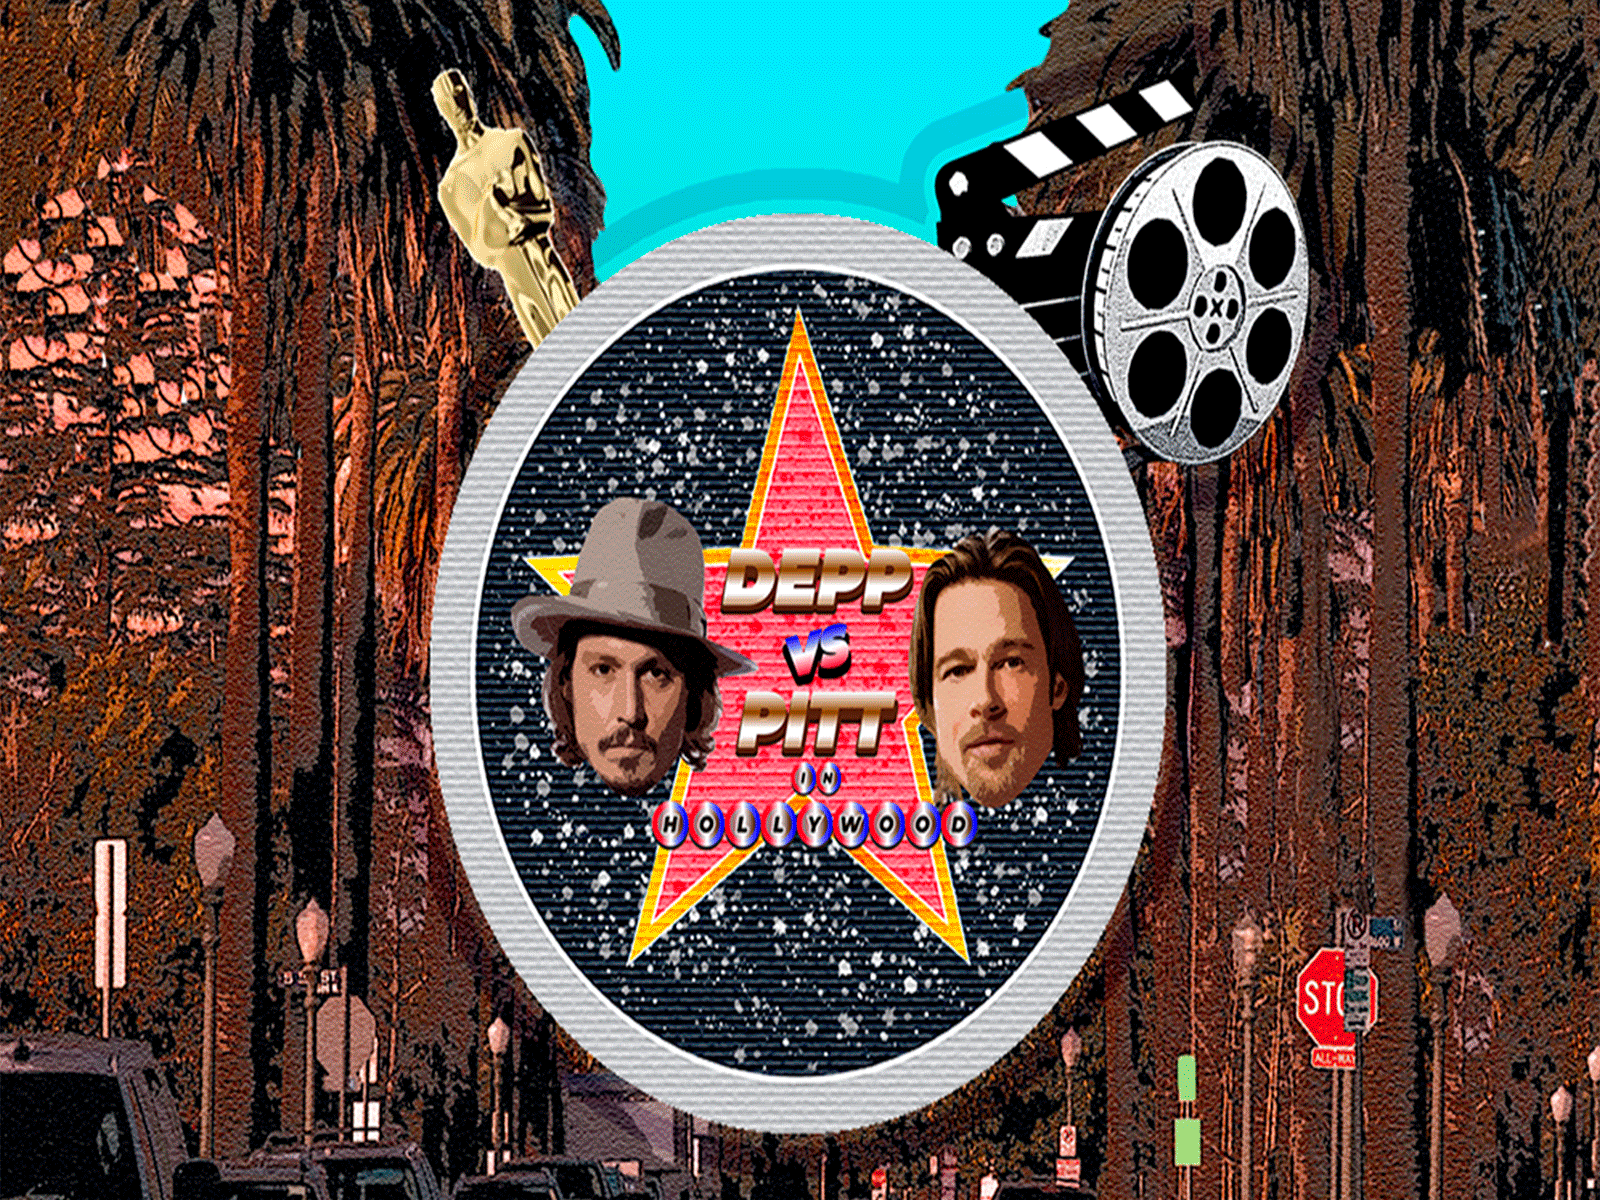 Comic slots Depp vs Pitt brad pitt design hollywood johny depp logo slots